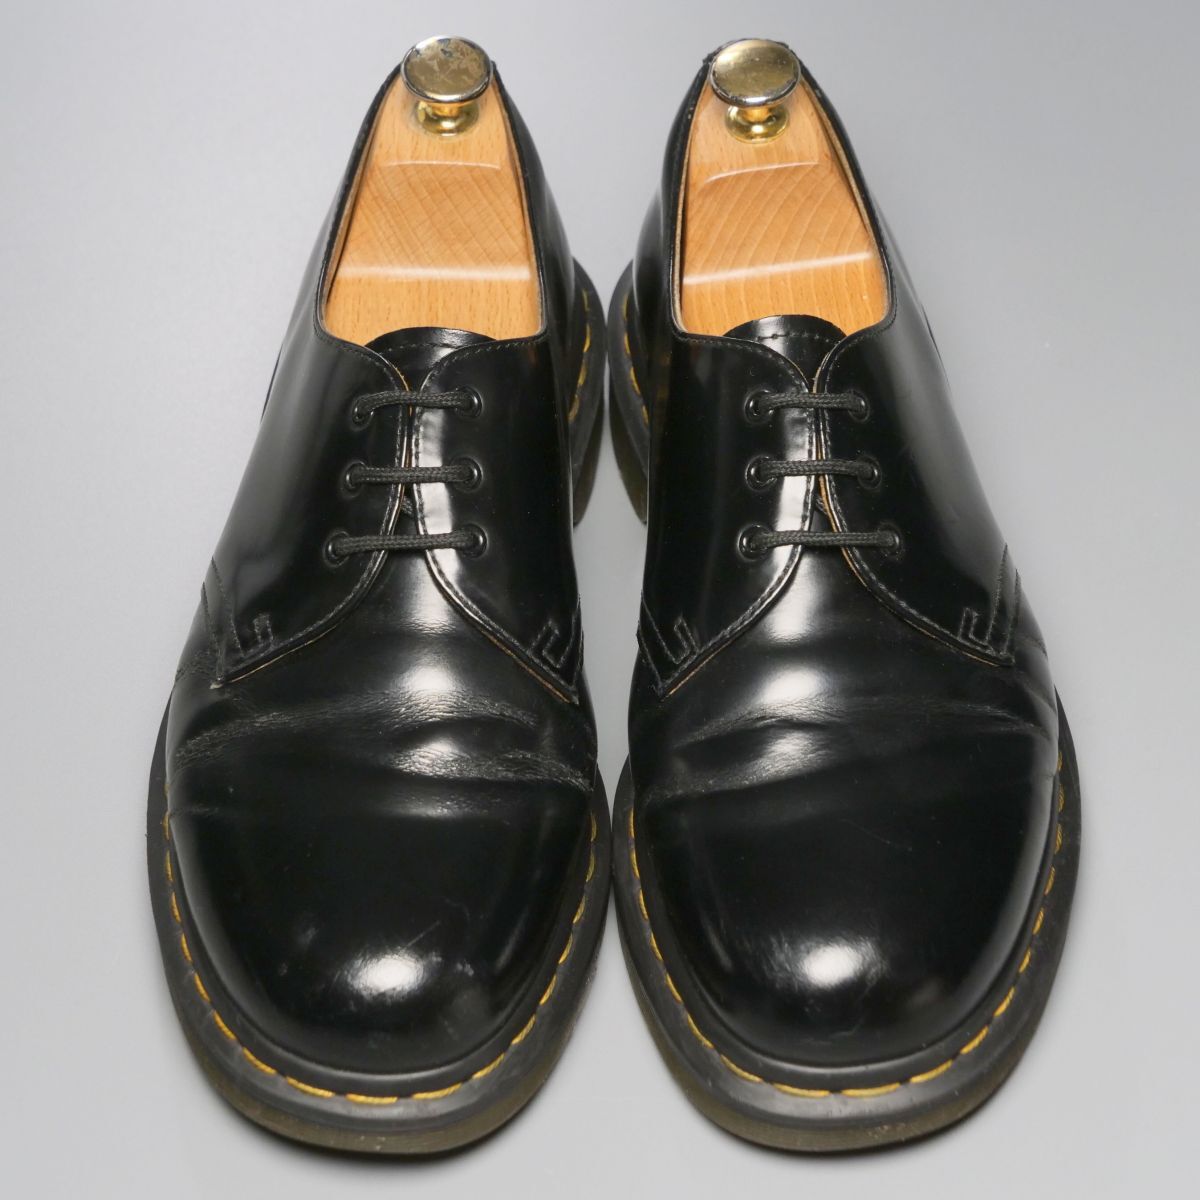 GP4122//*ドクターマーチン/Dr.Martens*1461 59/UK8/プレーントゥ/3ホールシューズ/レザーシューズ/革靴/黒/ブラックの画像1